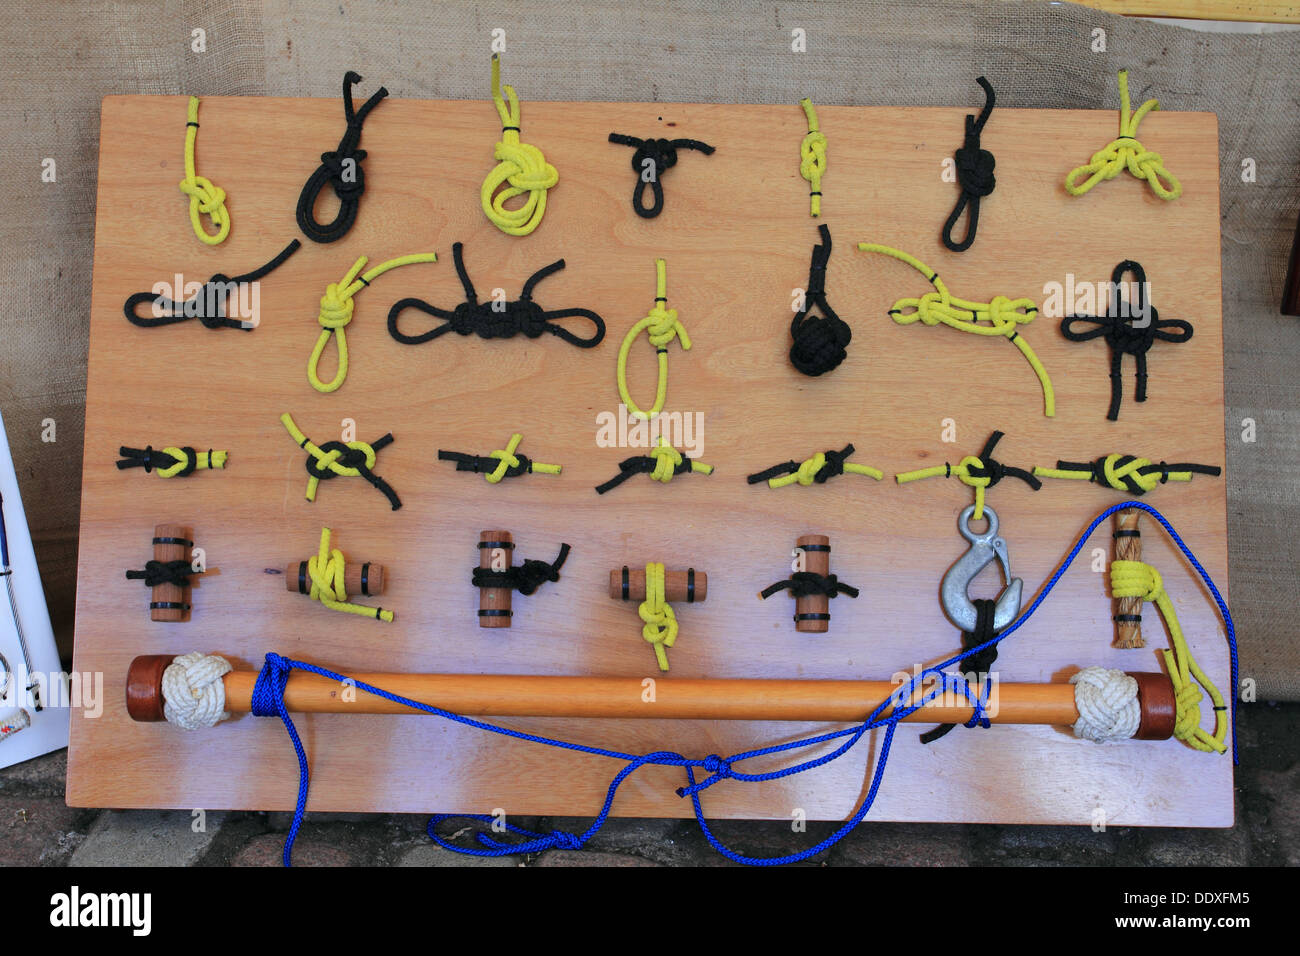 Knoten, Seil zeigt die Knots-Methode, internationales College für Bootsbau, Knots-Ausstellung, maritimes Festival, Great Yarmouth, Norfolk, Großbritannien Stockfoto